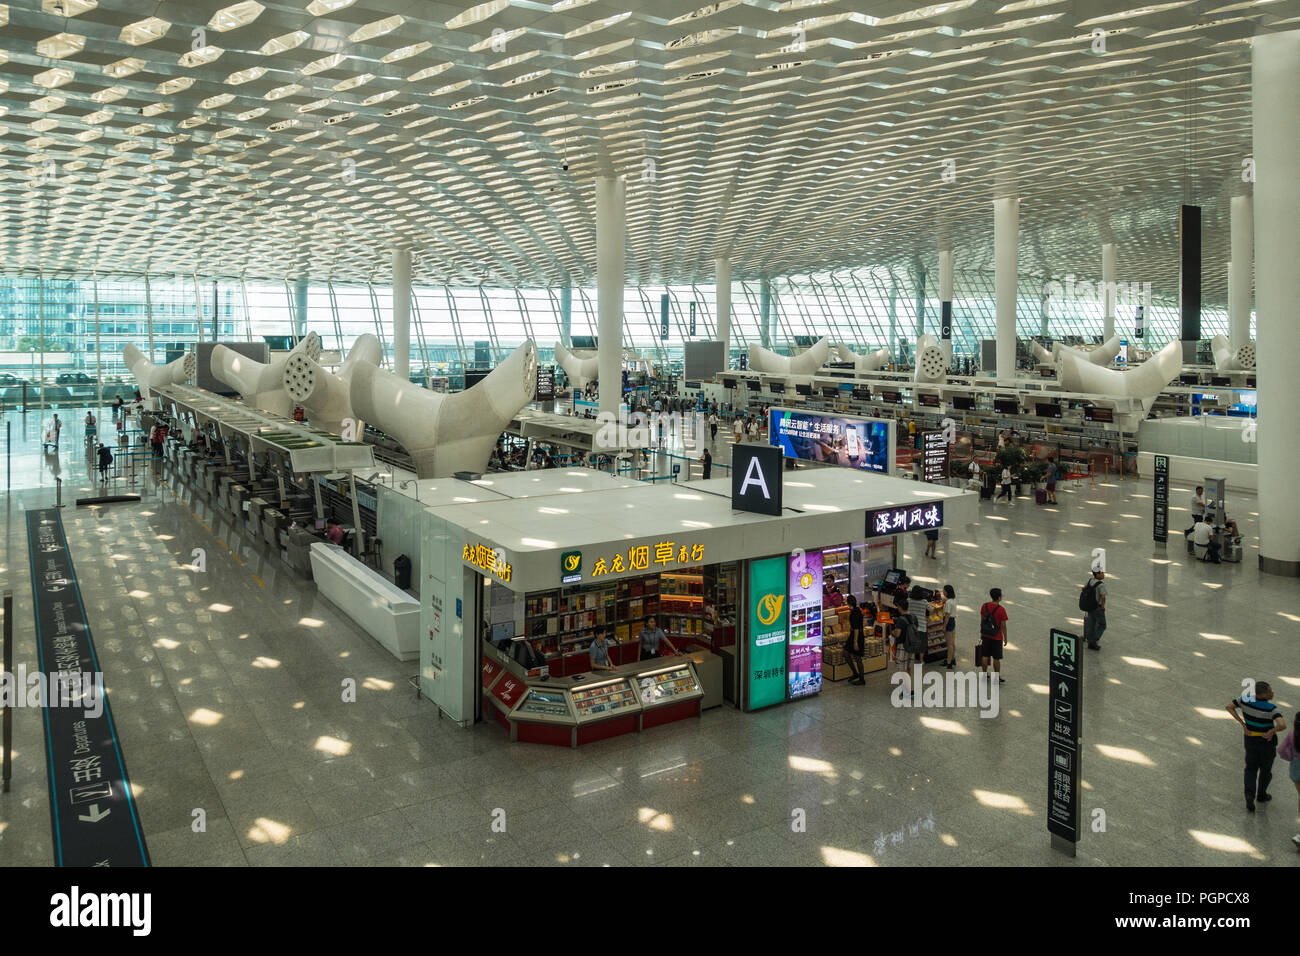 Shenzhen Bao'an International Airport check in area, Shenzhen China Stock Photo